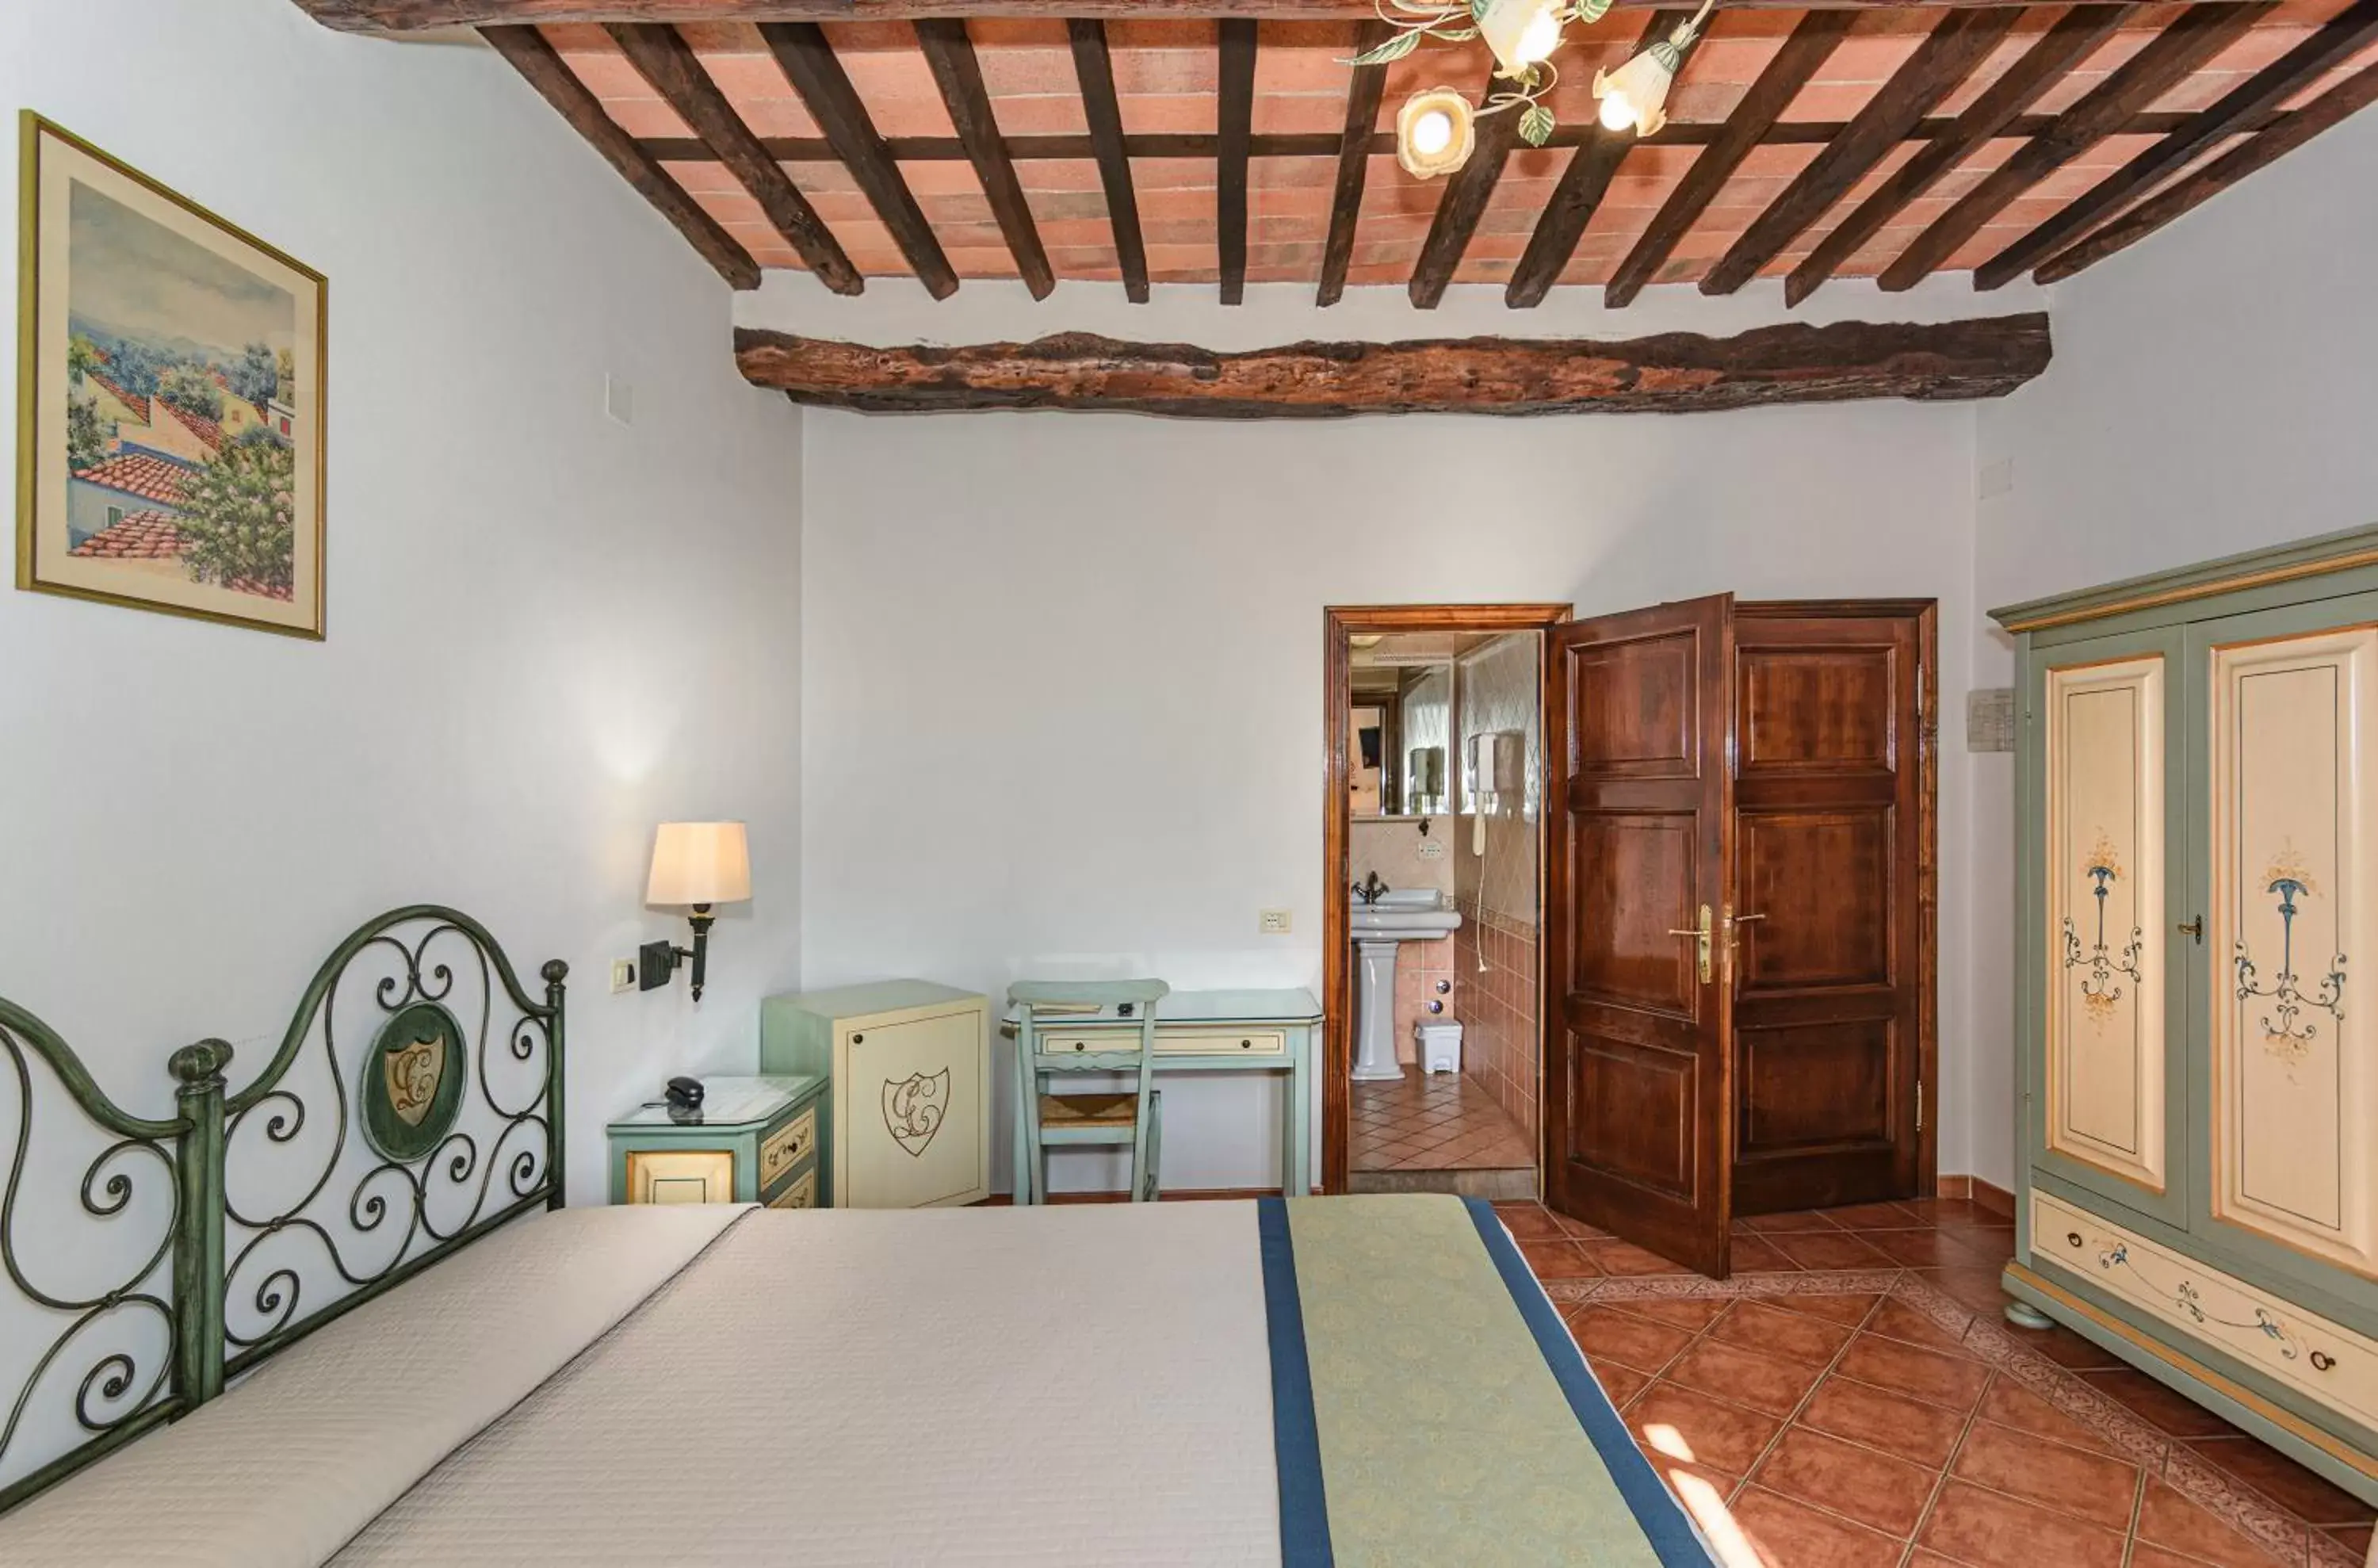 Bedroom in Hotel Villa Cheli